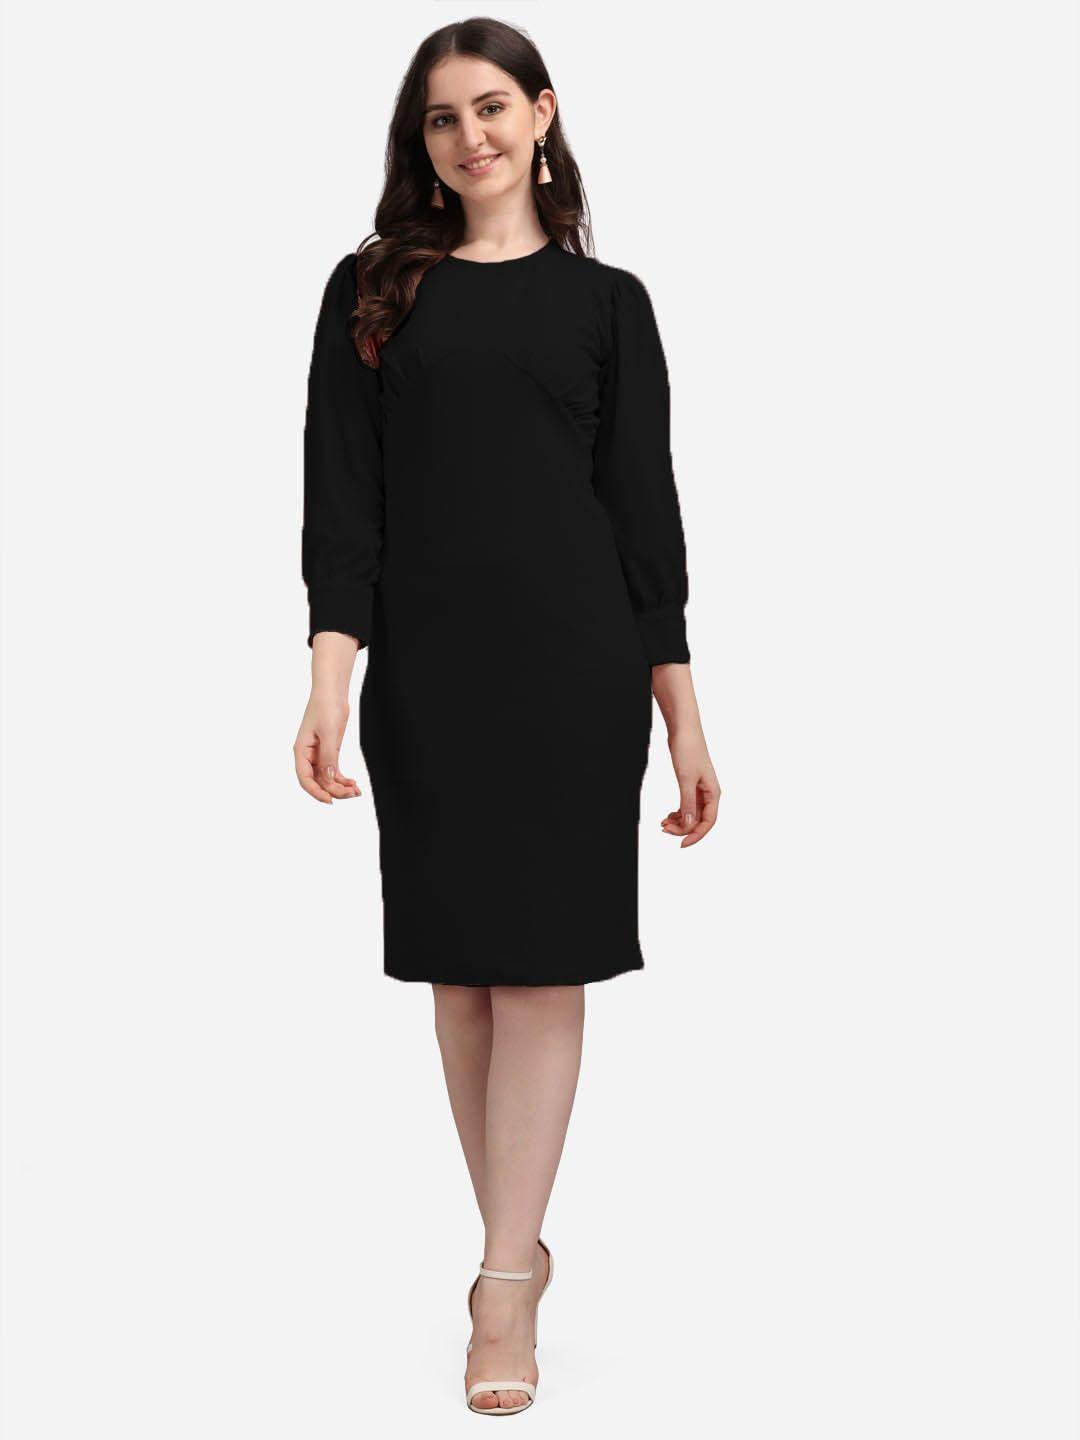 purvaja black solid sheath dress